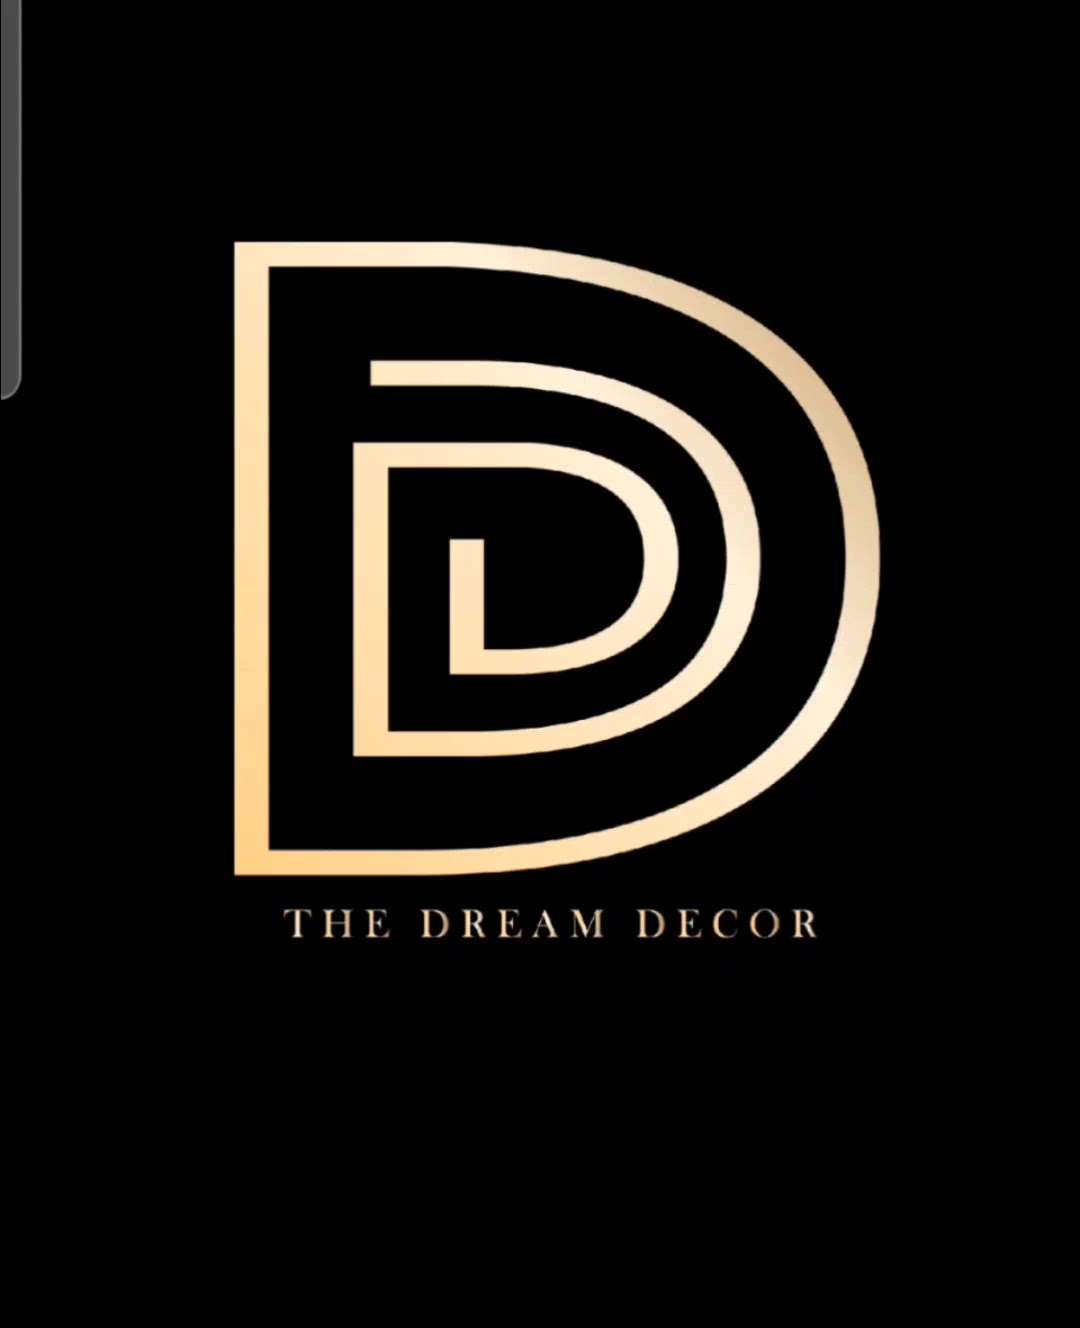 #The#Dream#Decor#trand#Defence #
colony